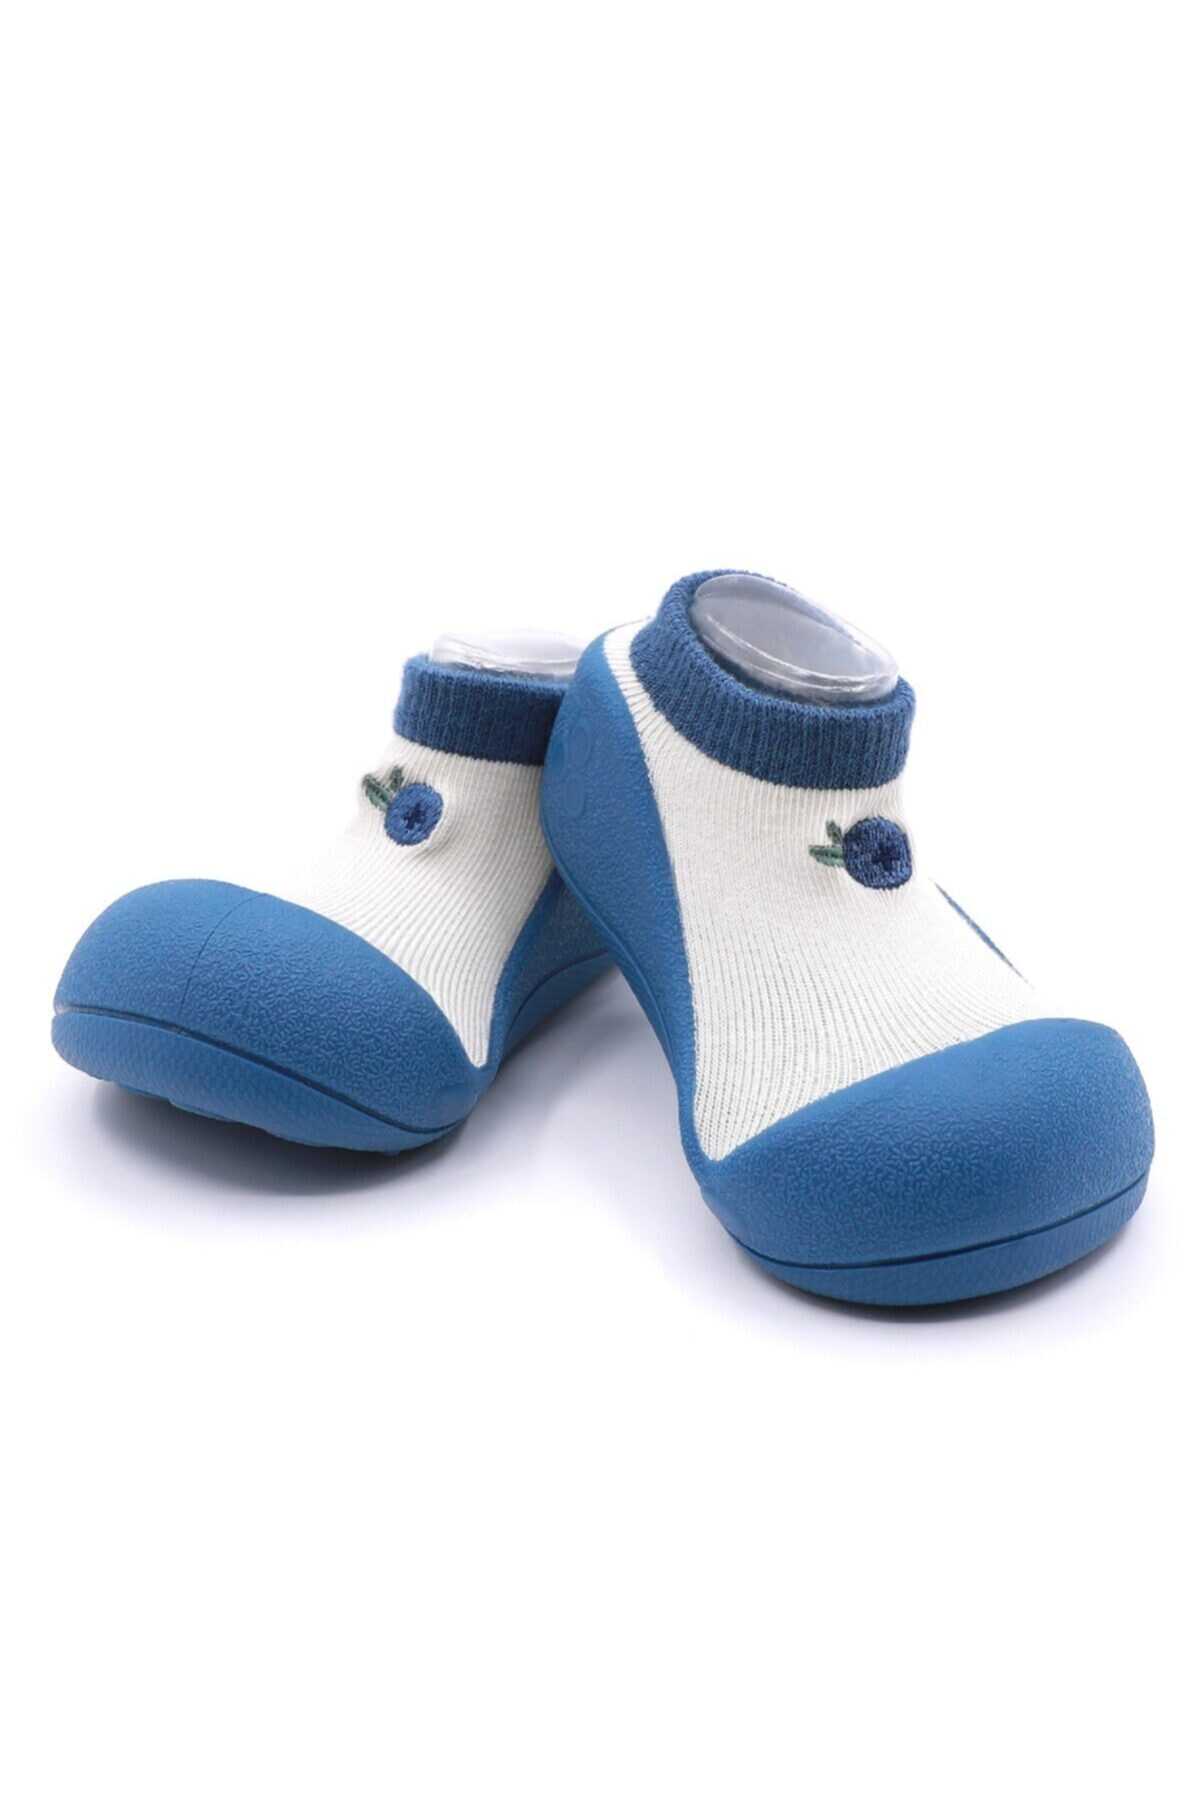 کفش جورابی نوزاد طرح بلوبری یونیسکس دو رنگ آبی سفید برند Attipas 